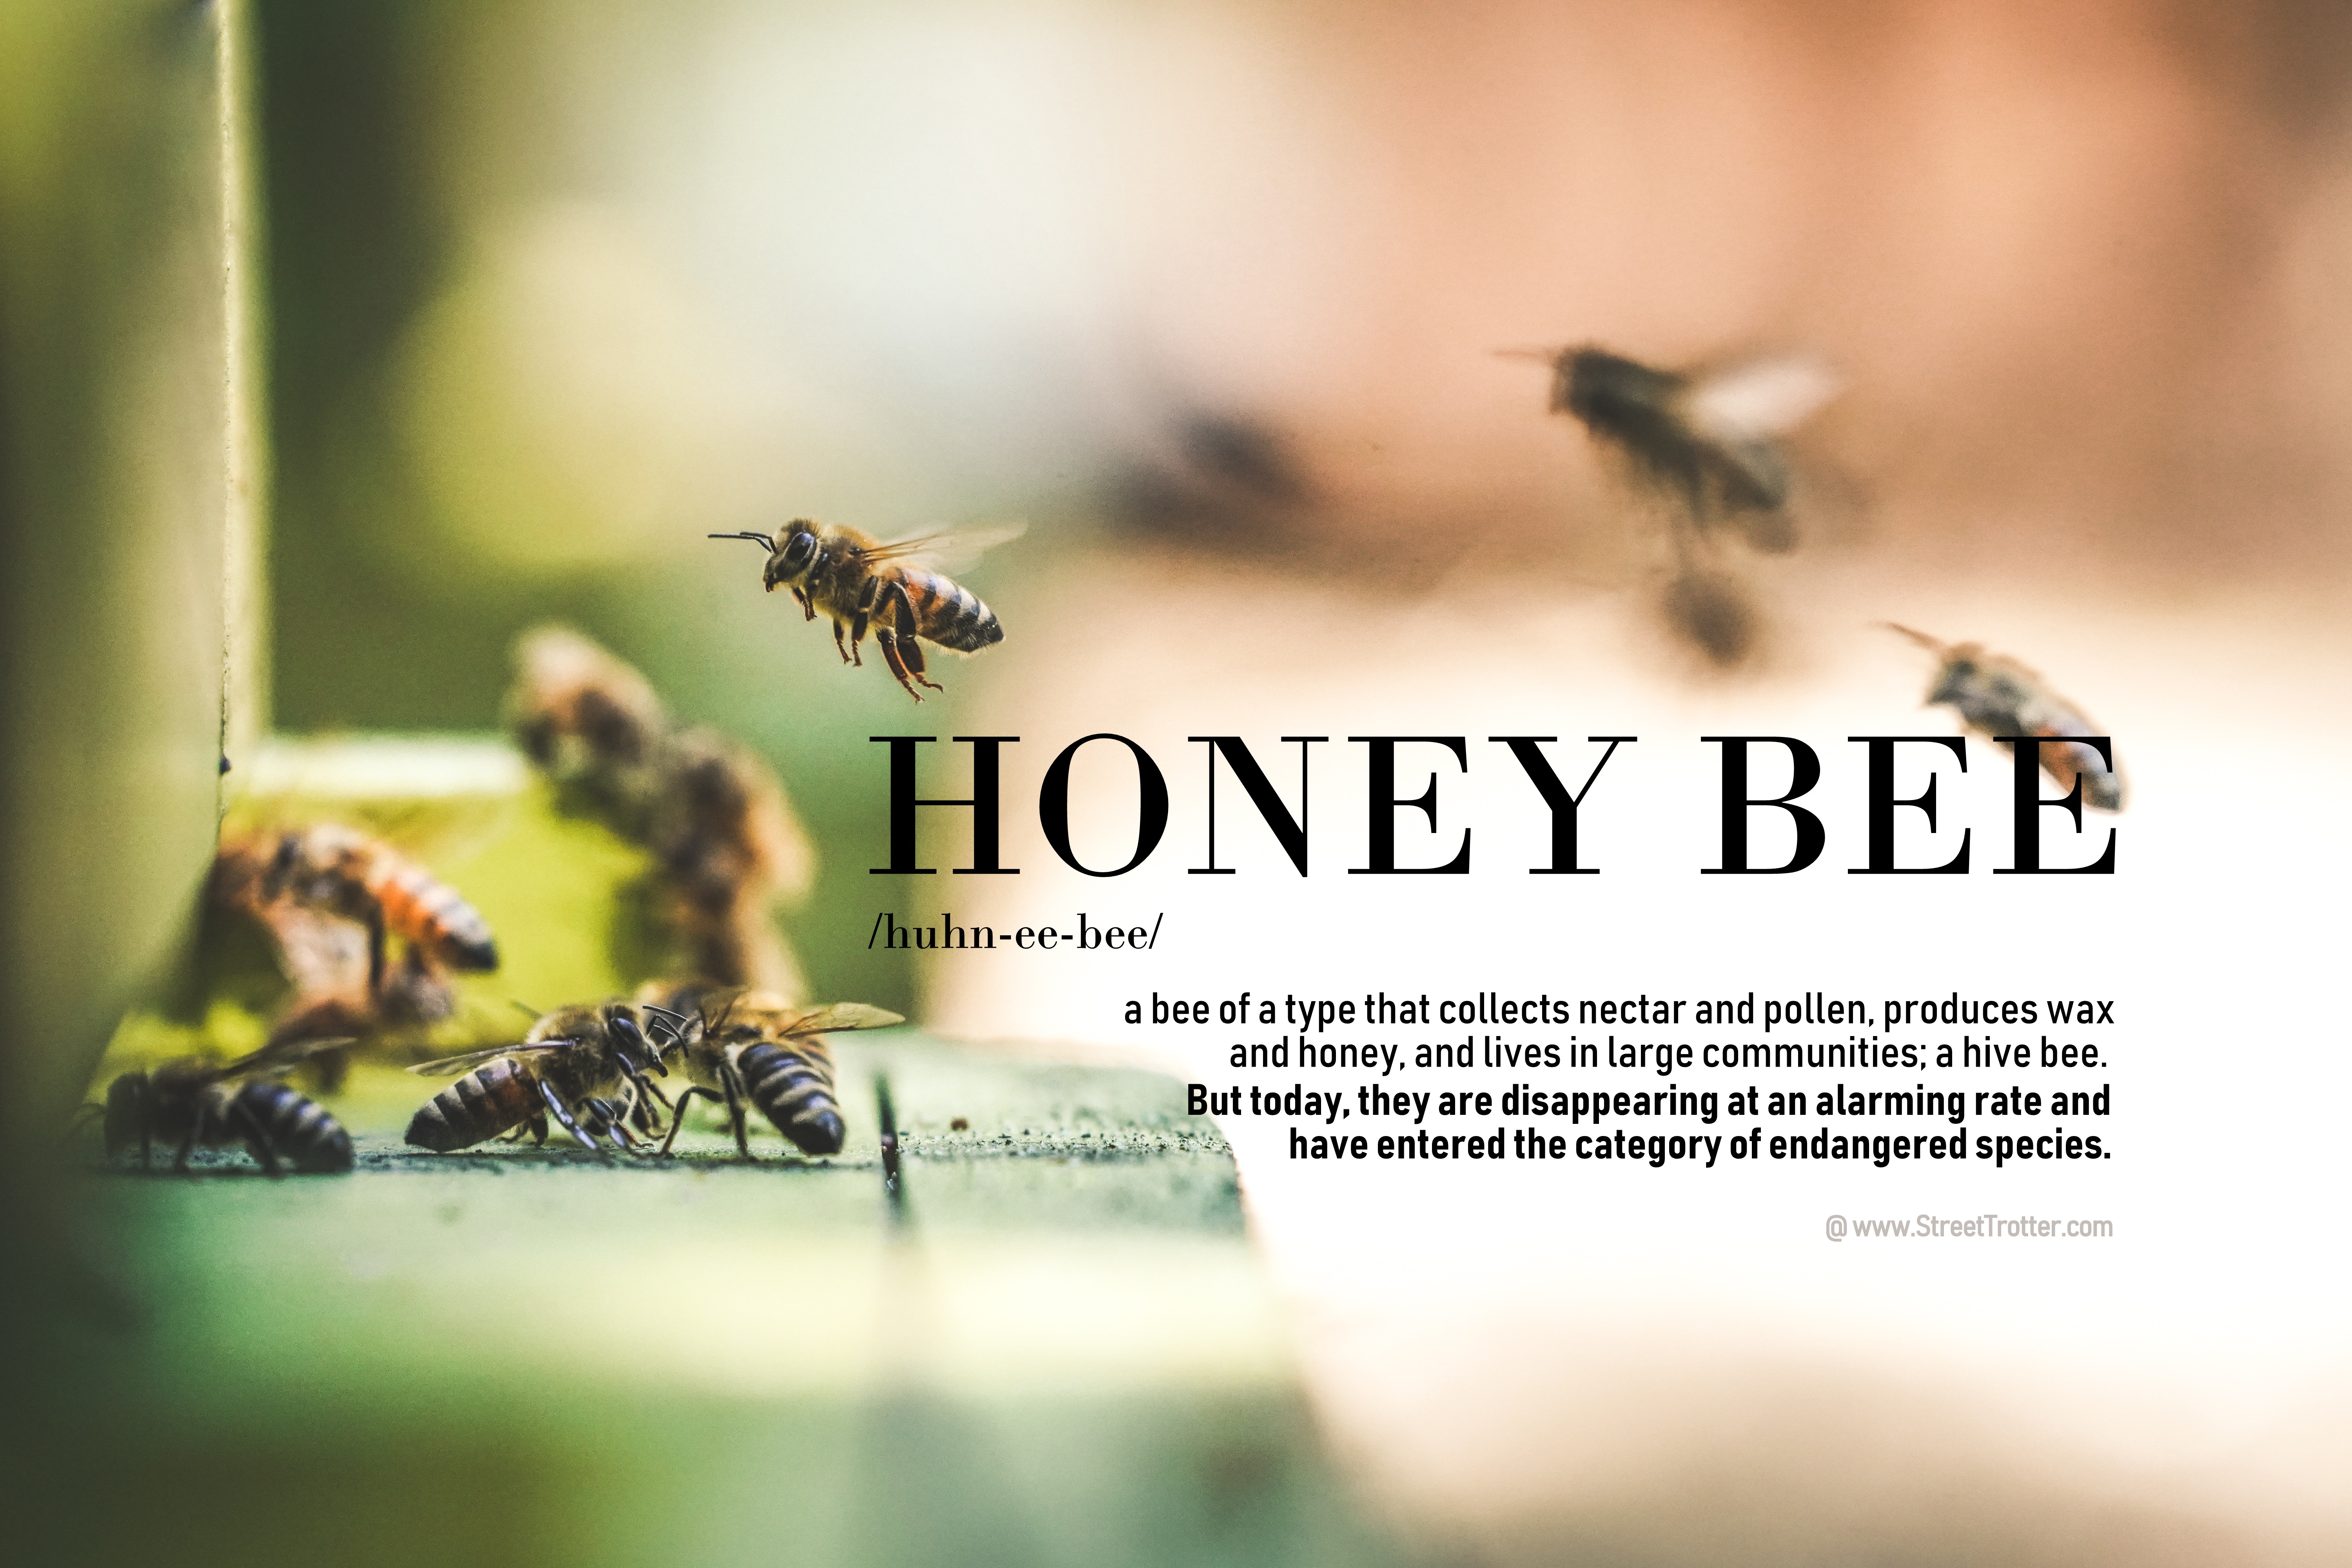 honey - bees - streetrotter